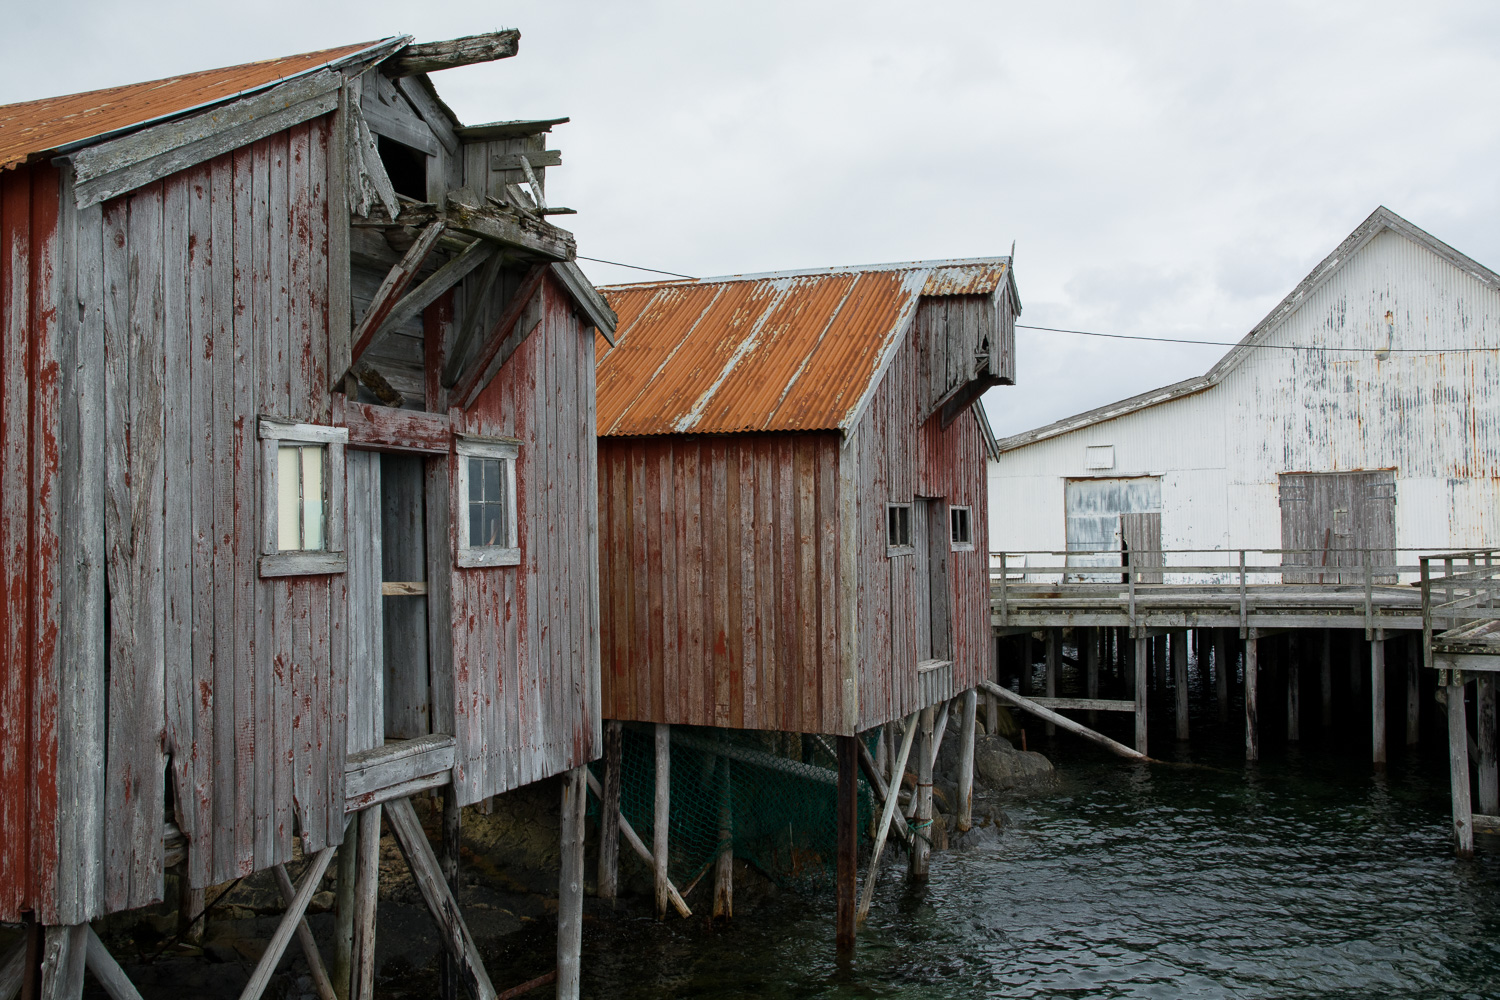 Gammelt fiskemottak på Husvær // Old port in Husvær